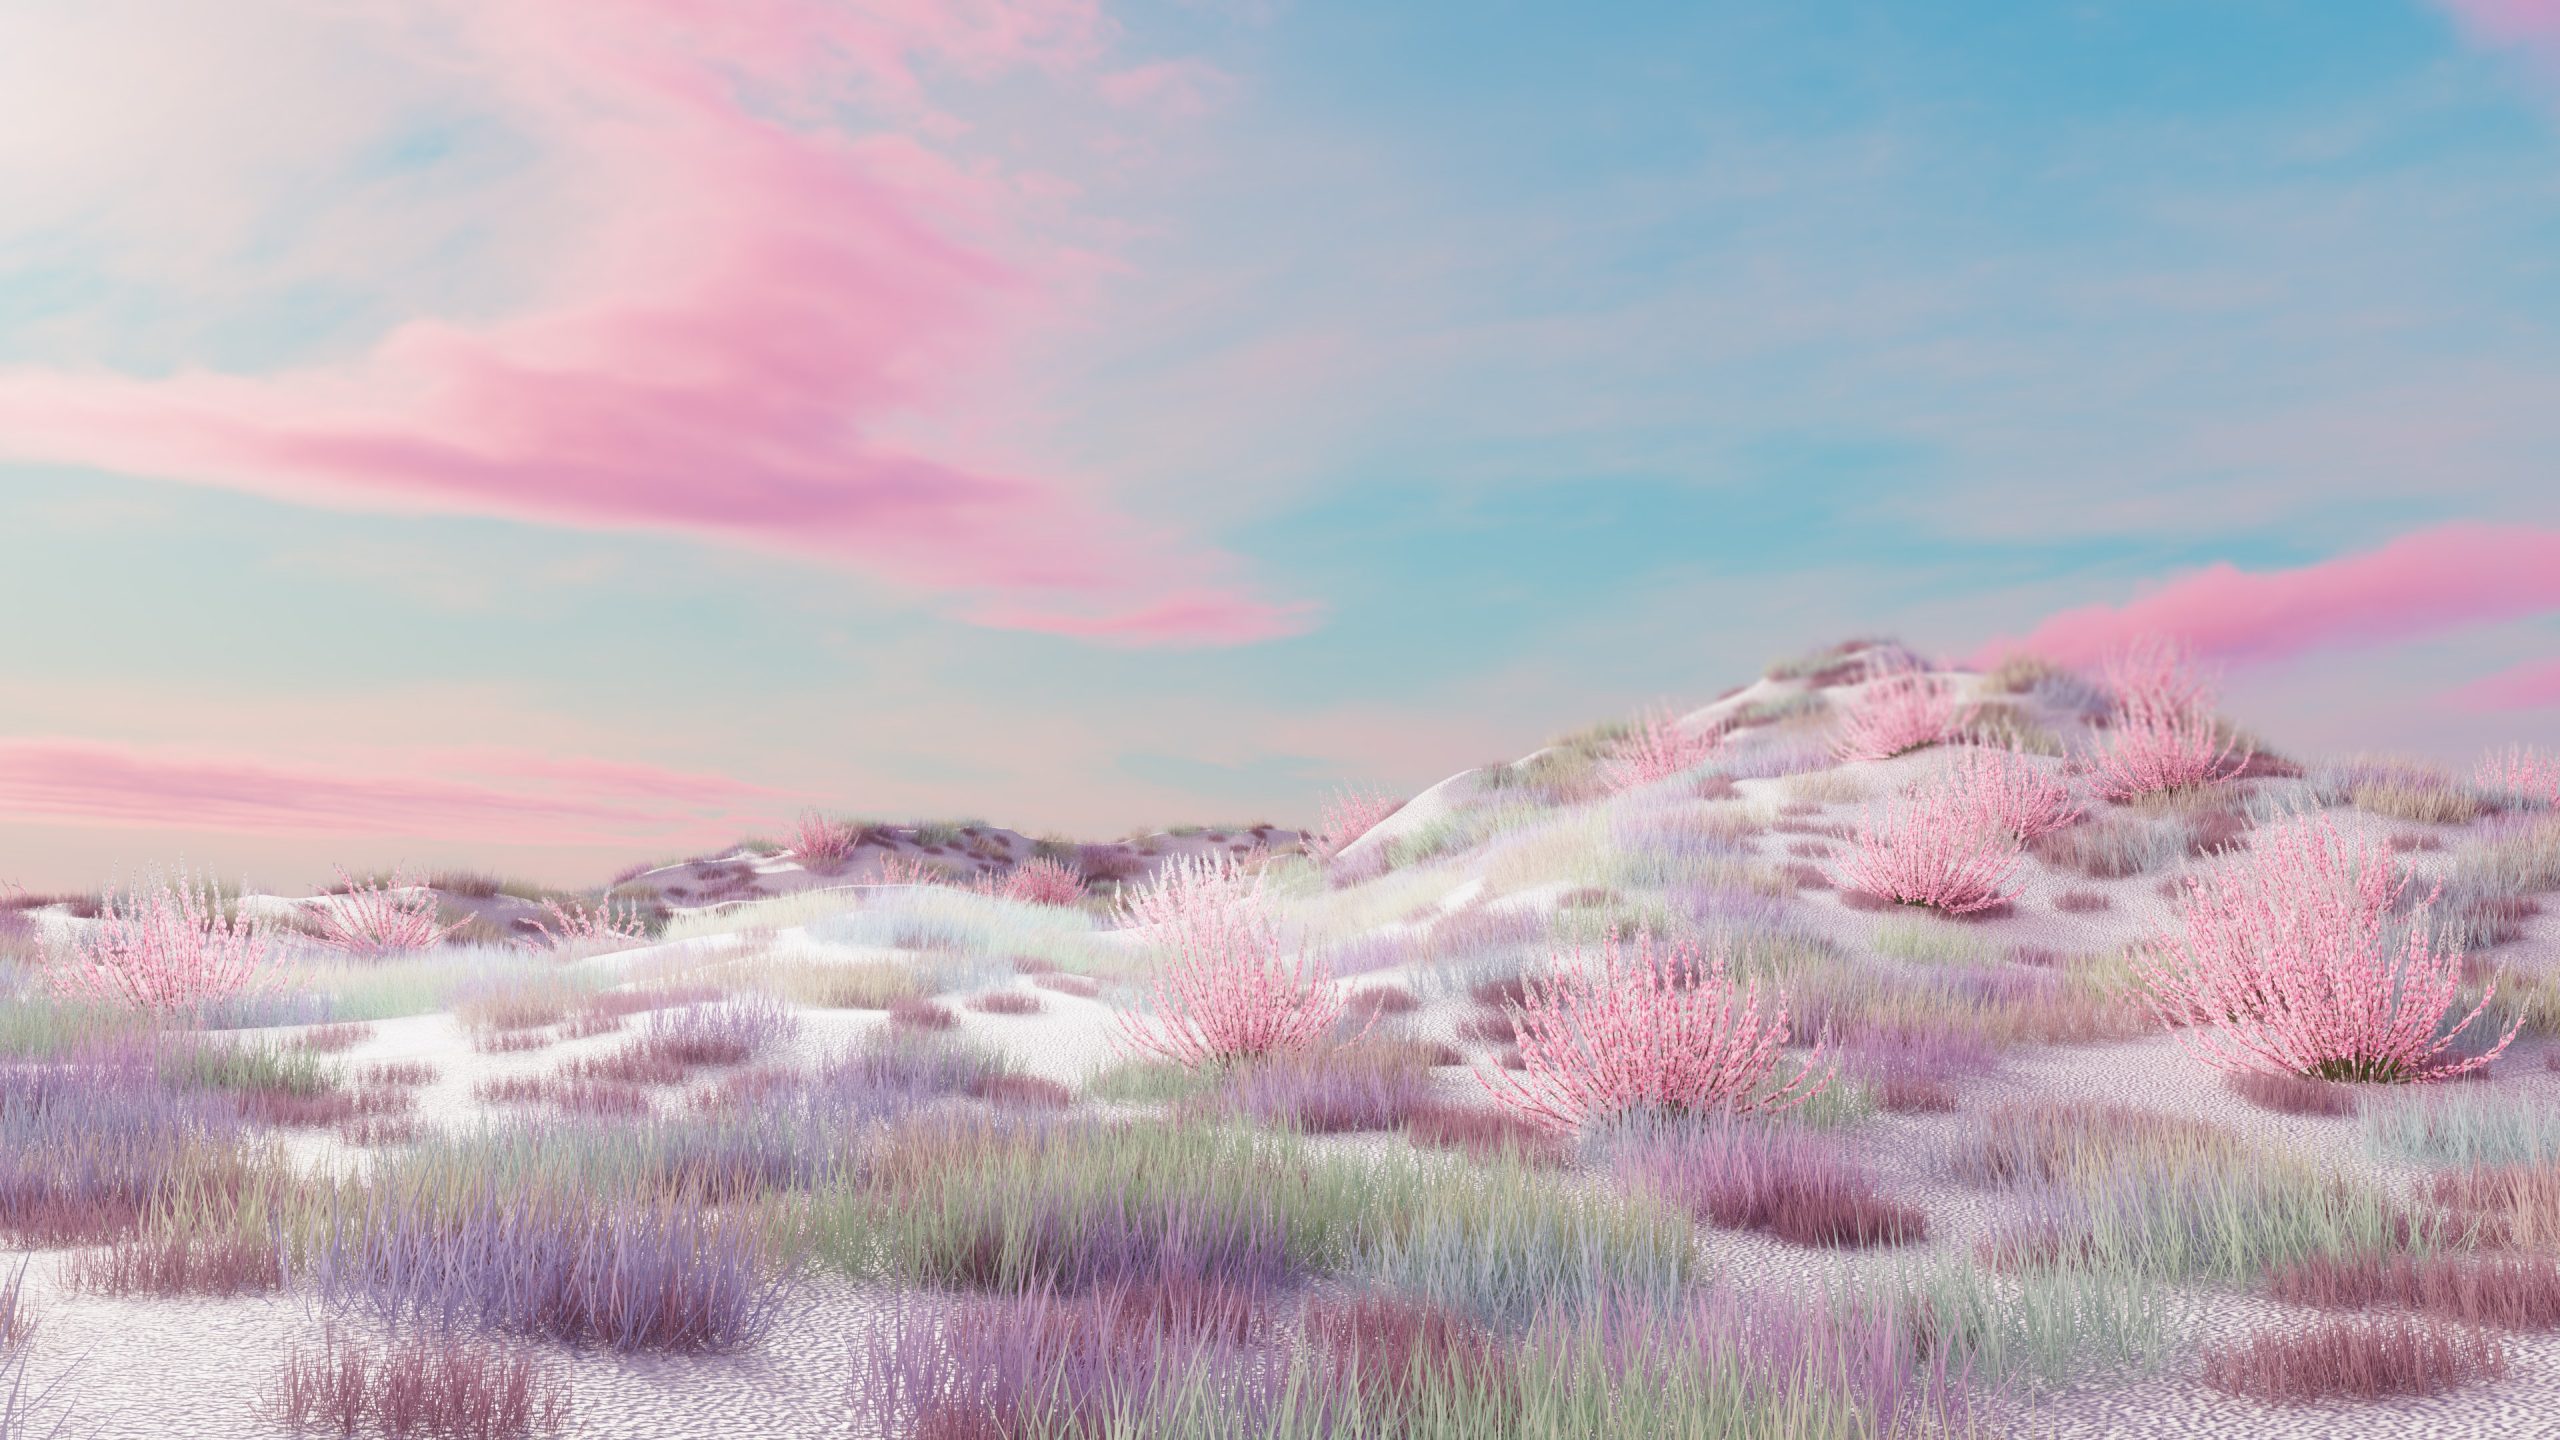 c4d rendering surreal landscape